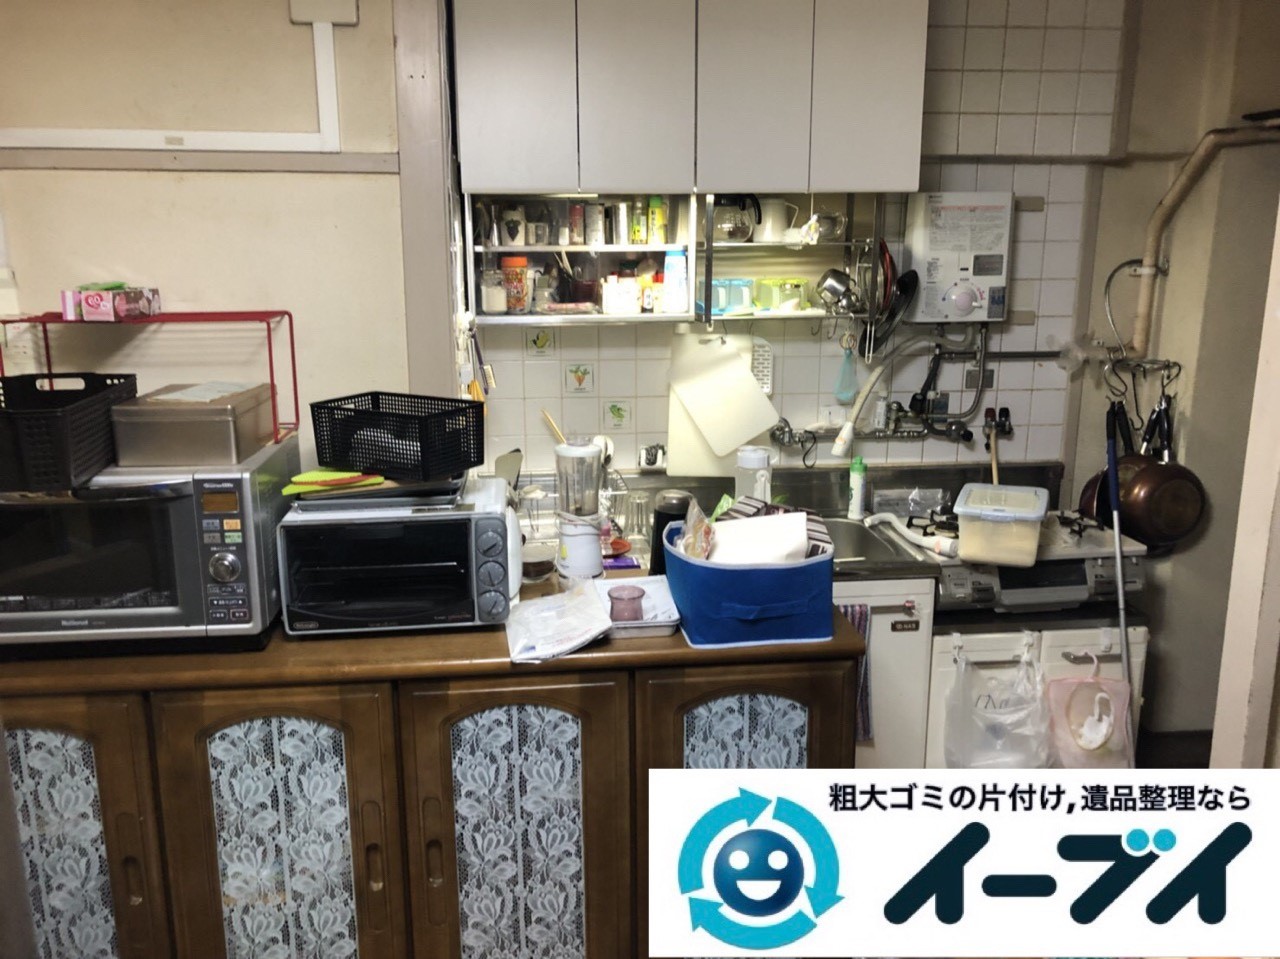 2019年1月26日大阪府大阪市淀川区でキッチンの片付け作業をさせていただきました。写真3